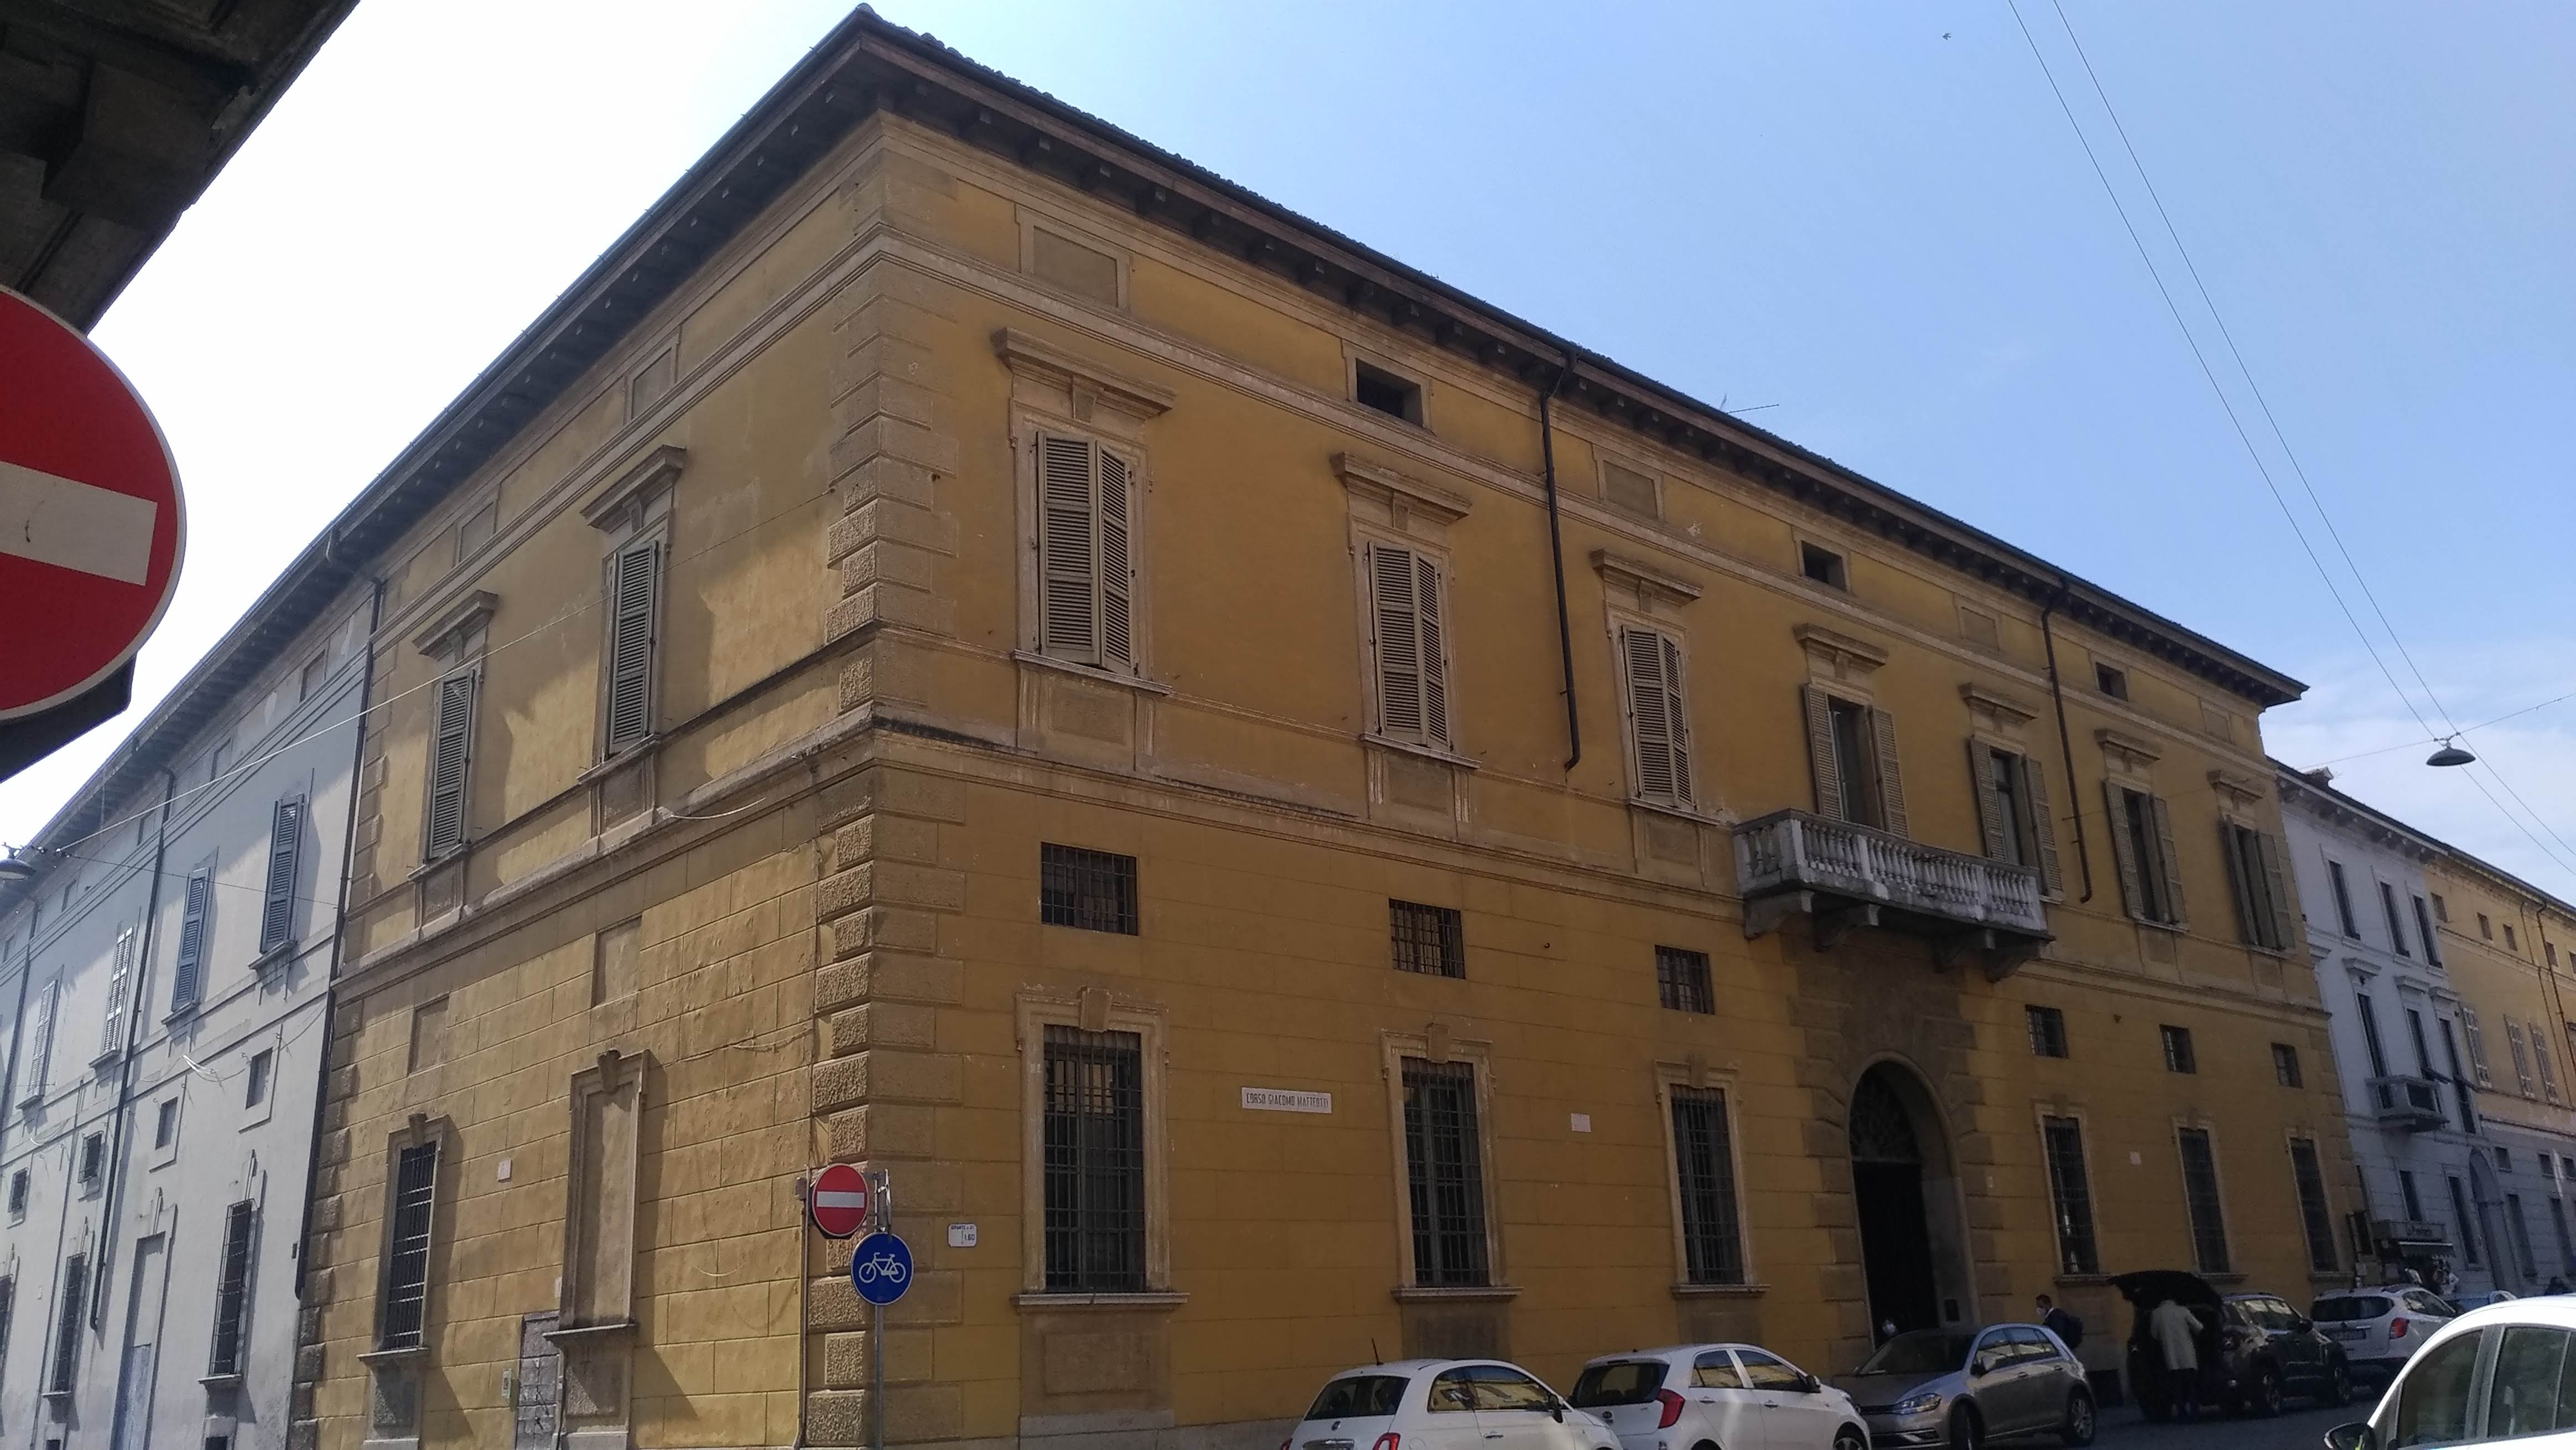 Palazzo Cavalcabò (palazzo, nobiliare) - Cremona (CR)  (XIX, metà)